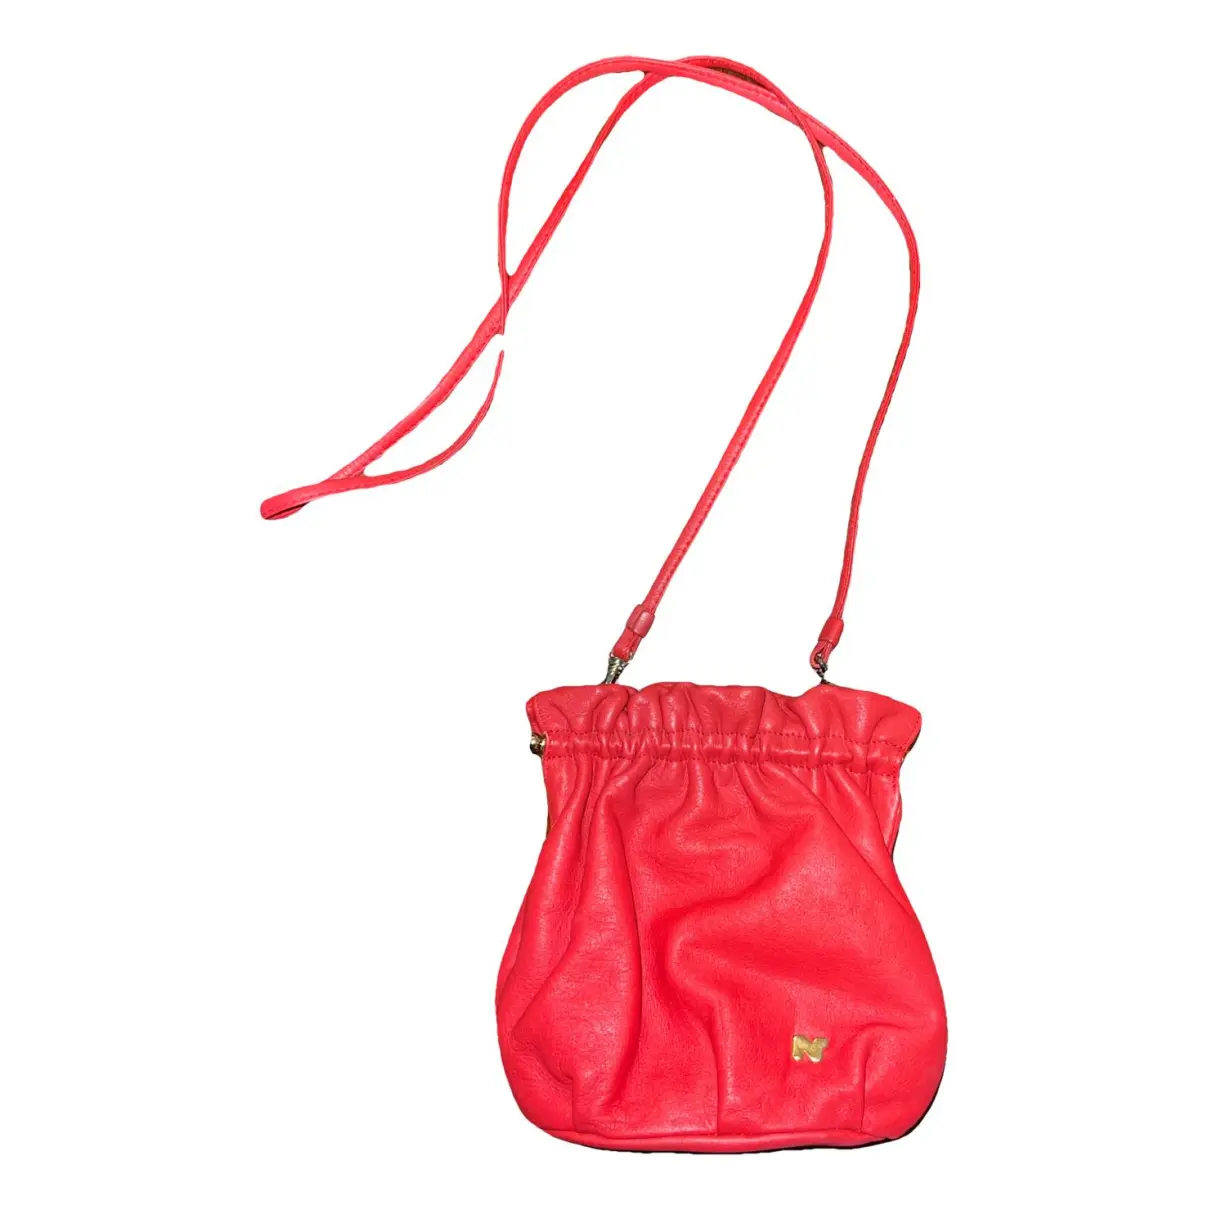 Leather mini bag Nina Ricci - Vintage